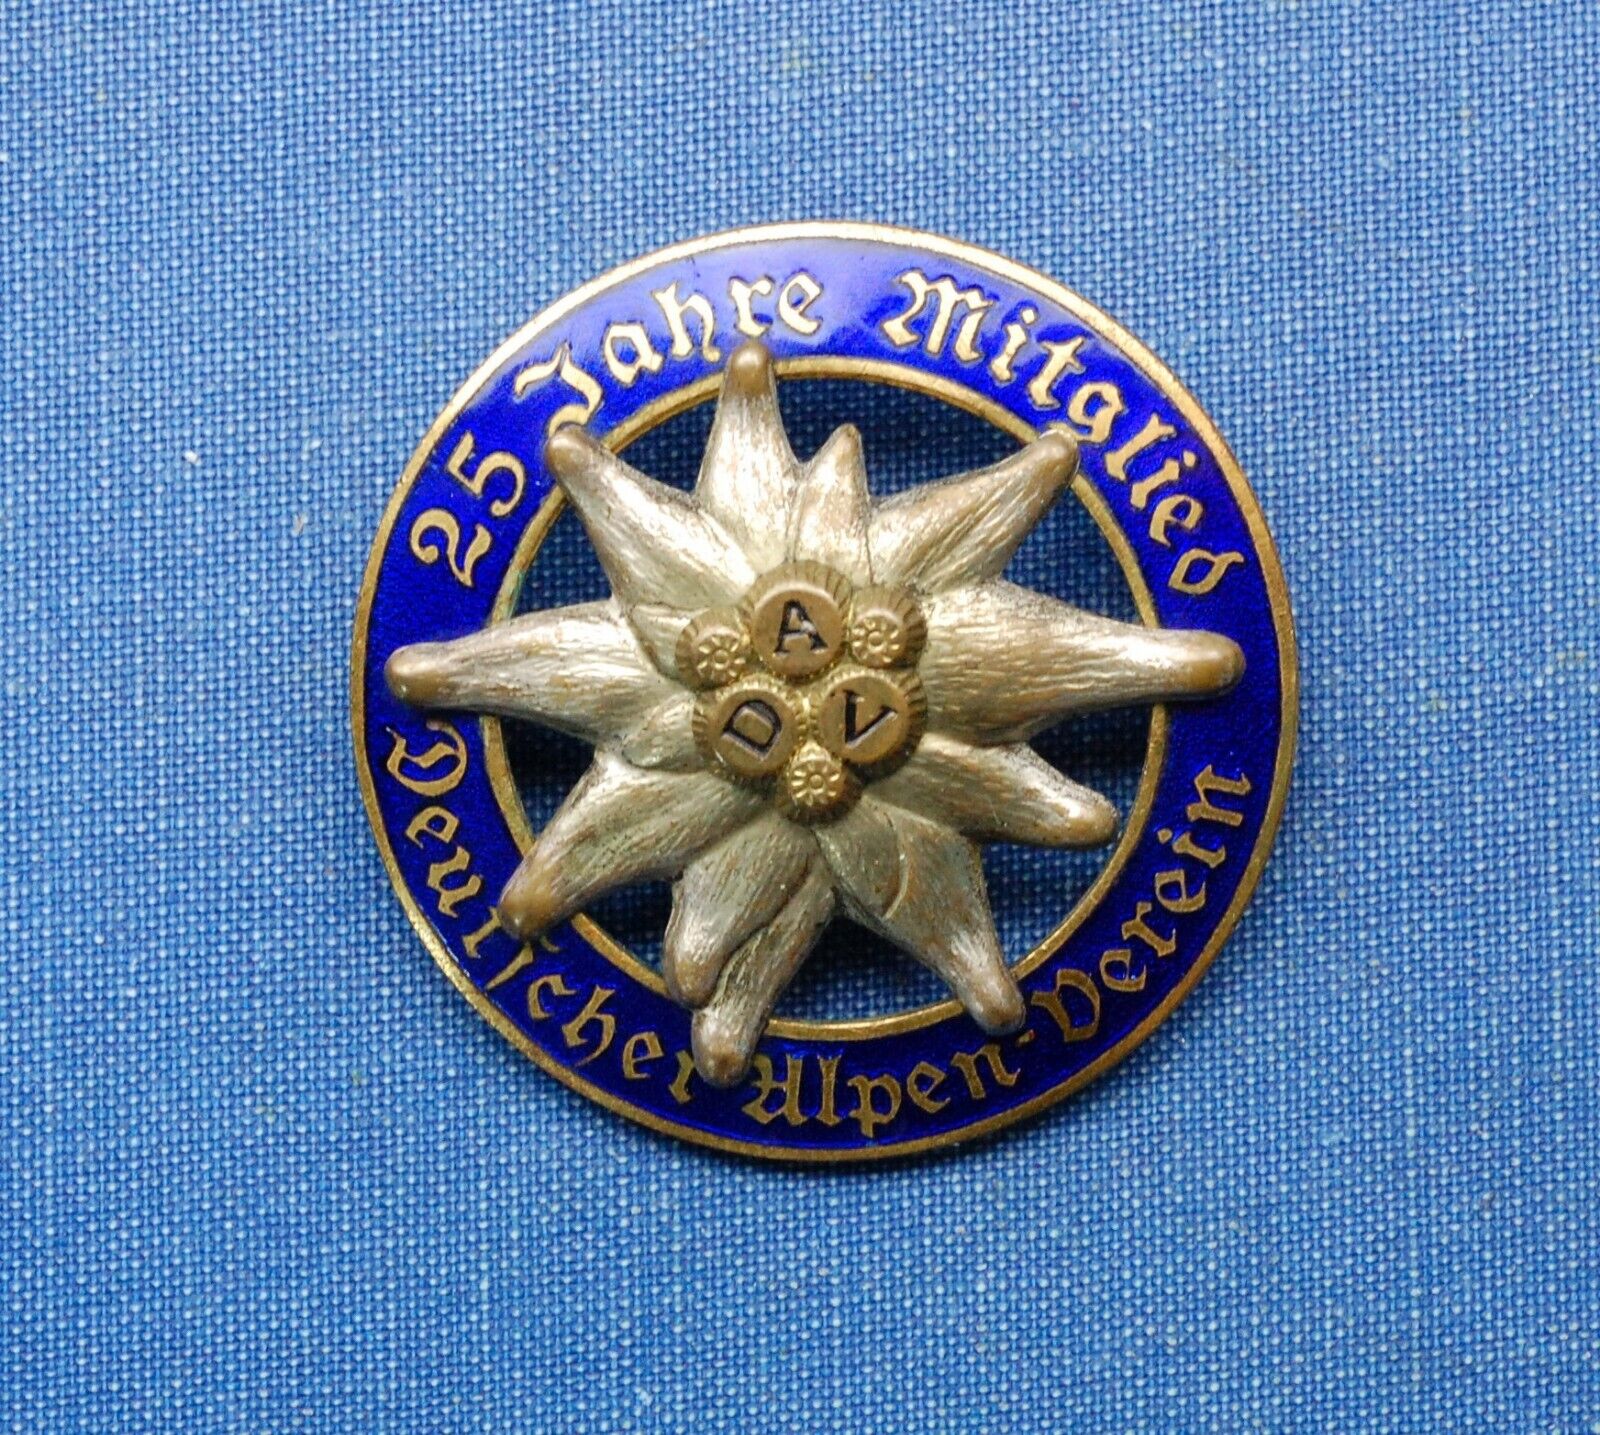 German WWI Military Medal - German Alpine Club (DAV - Deutscher Alpenverein)